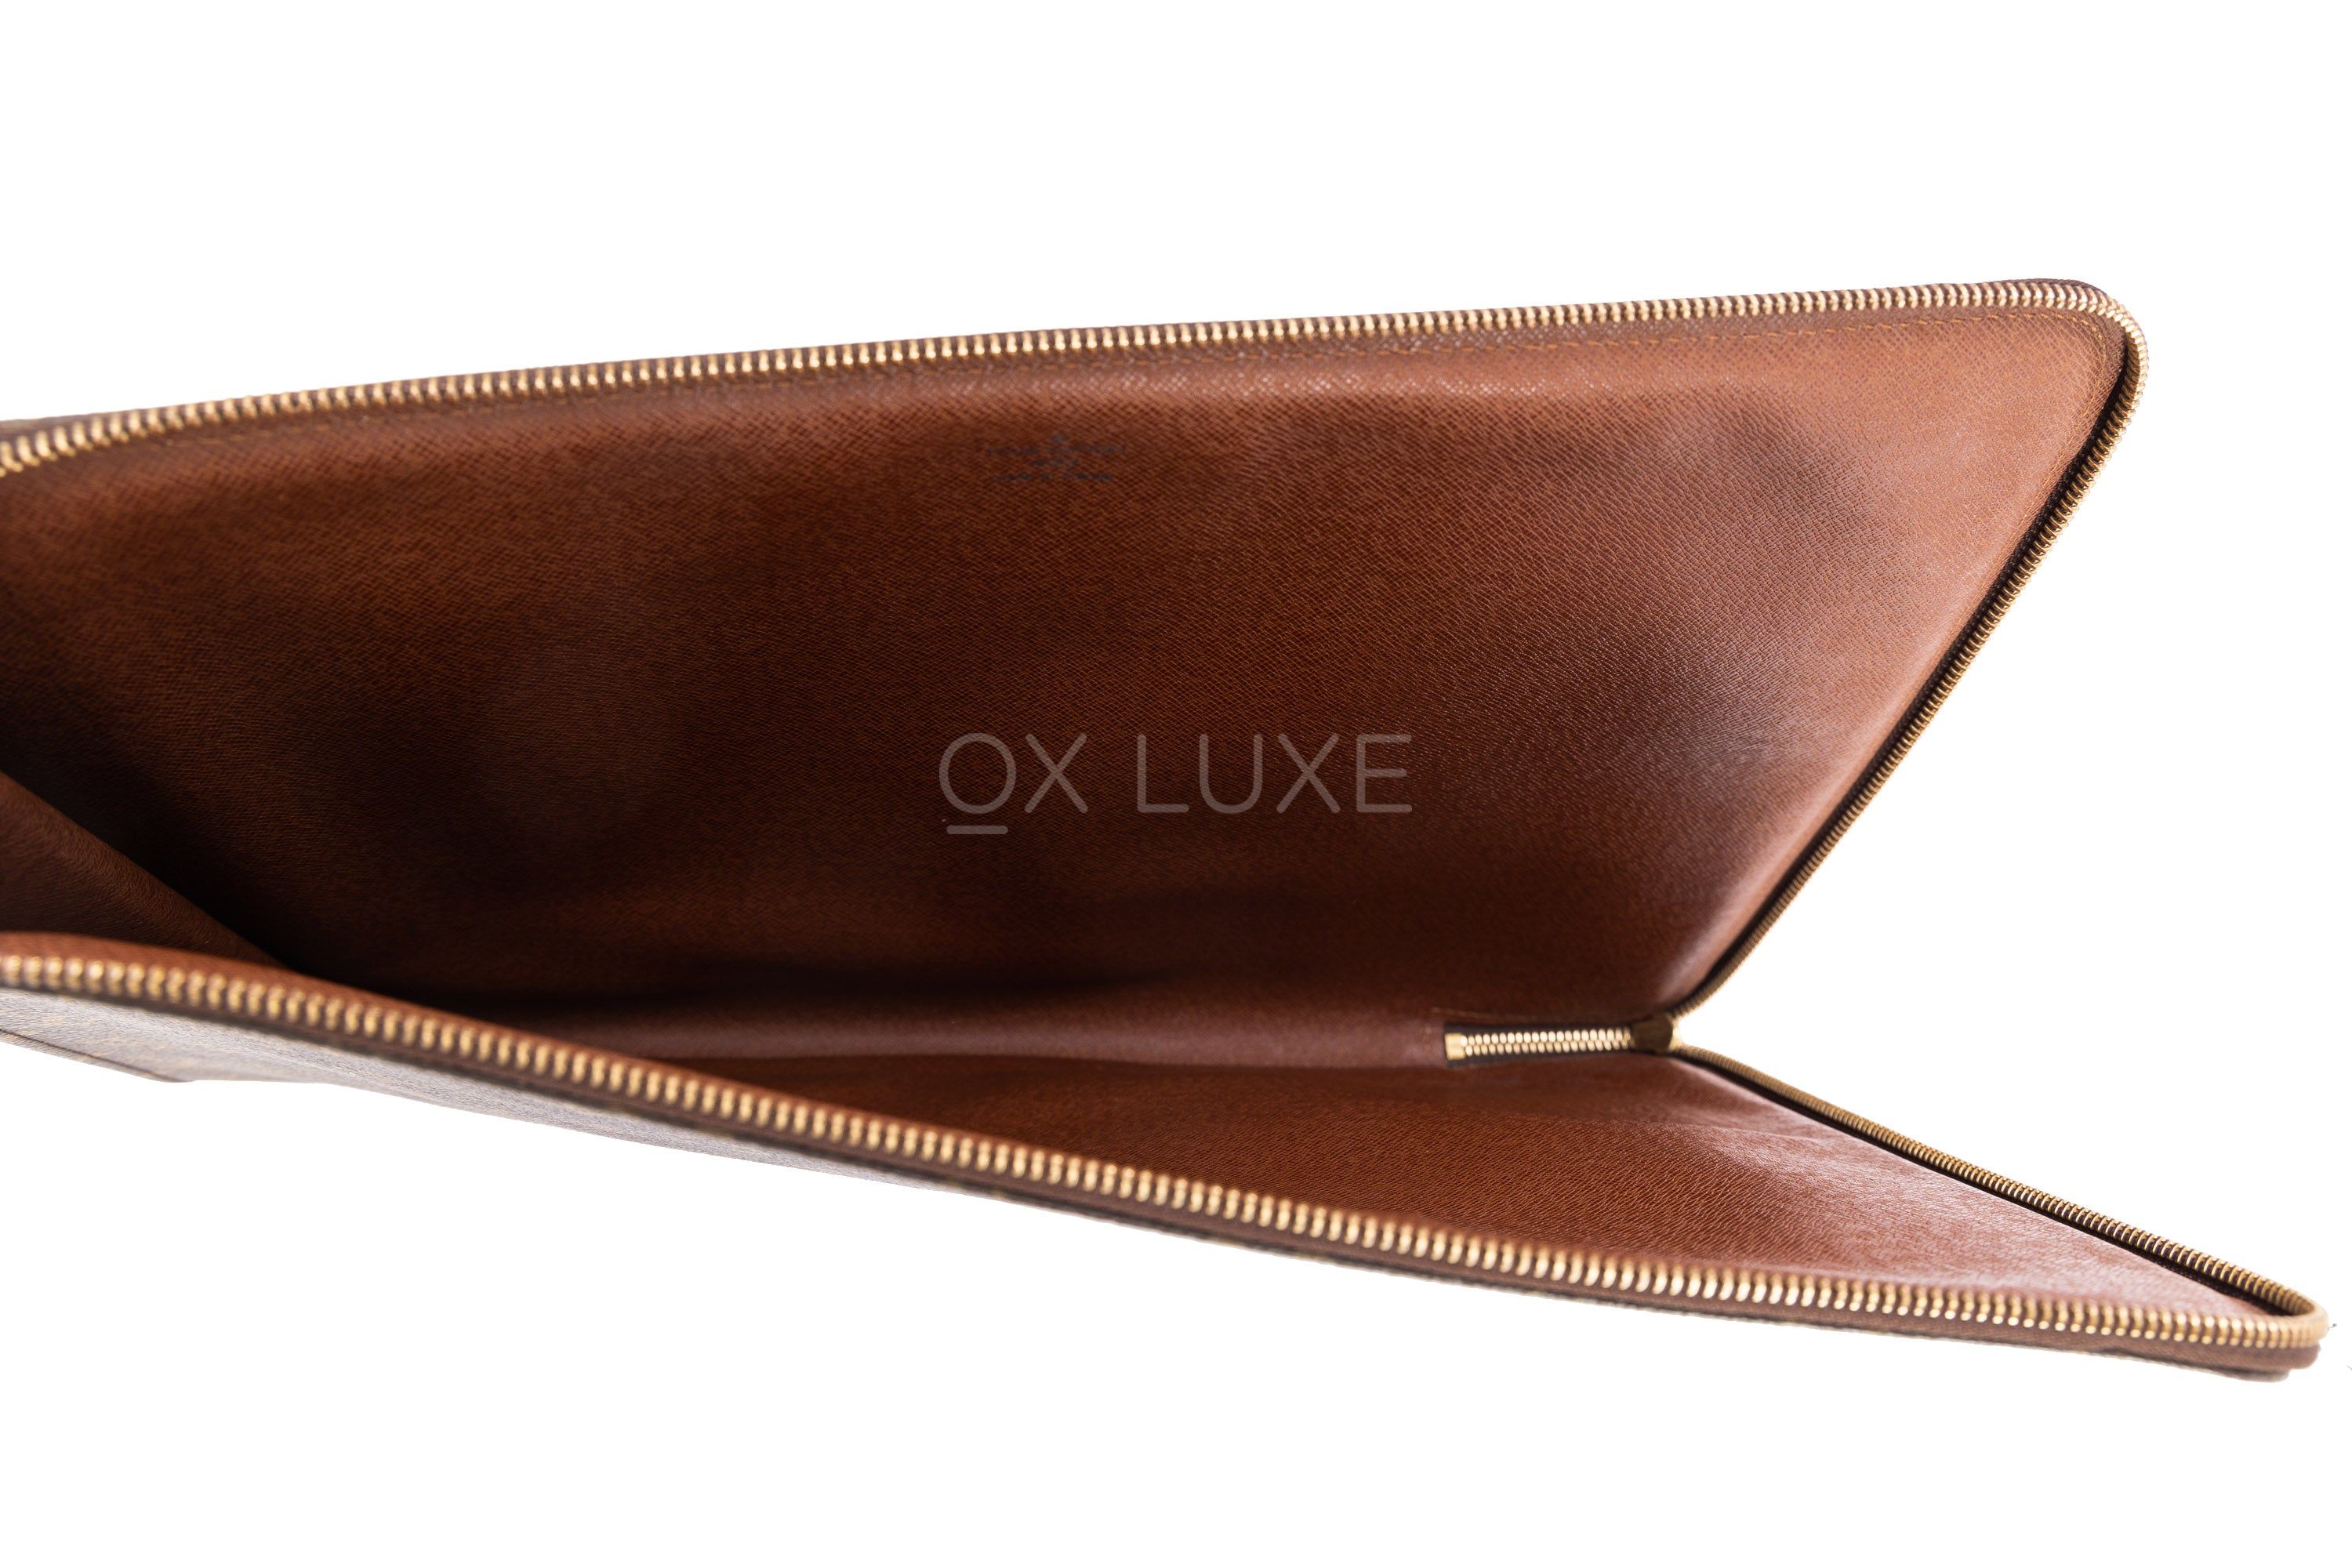 Louis Vuitton LV Laptop Case oxluxe